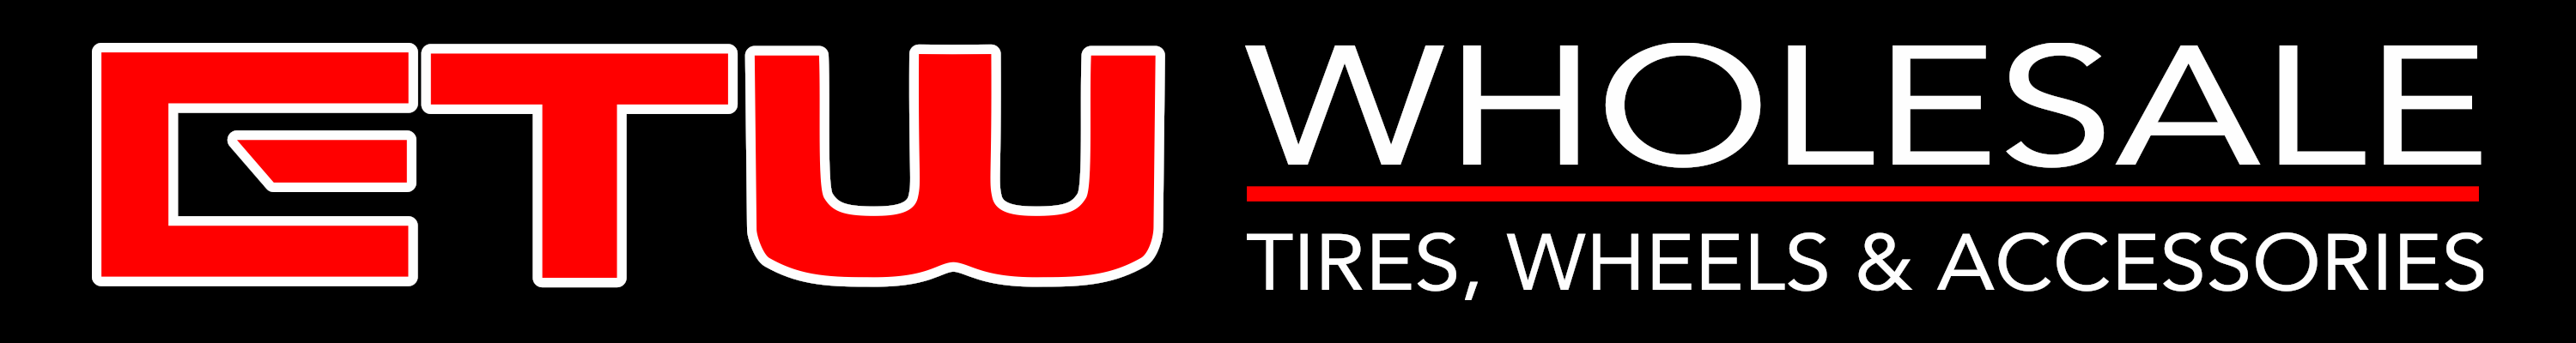 Elite Tire & Wheel Wholesale